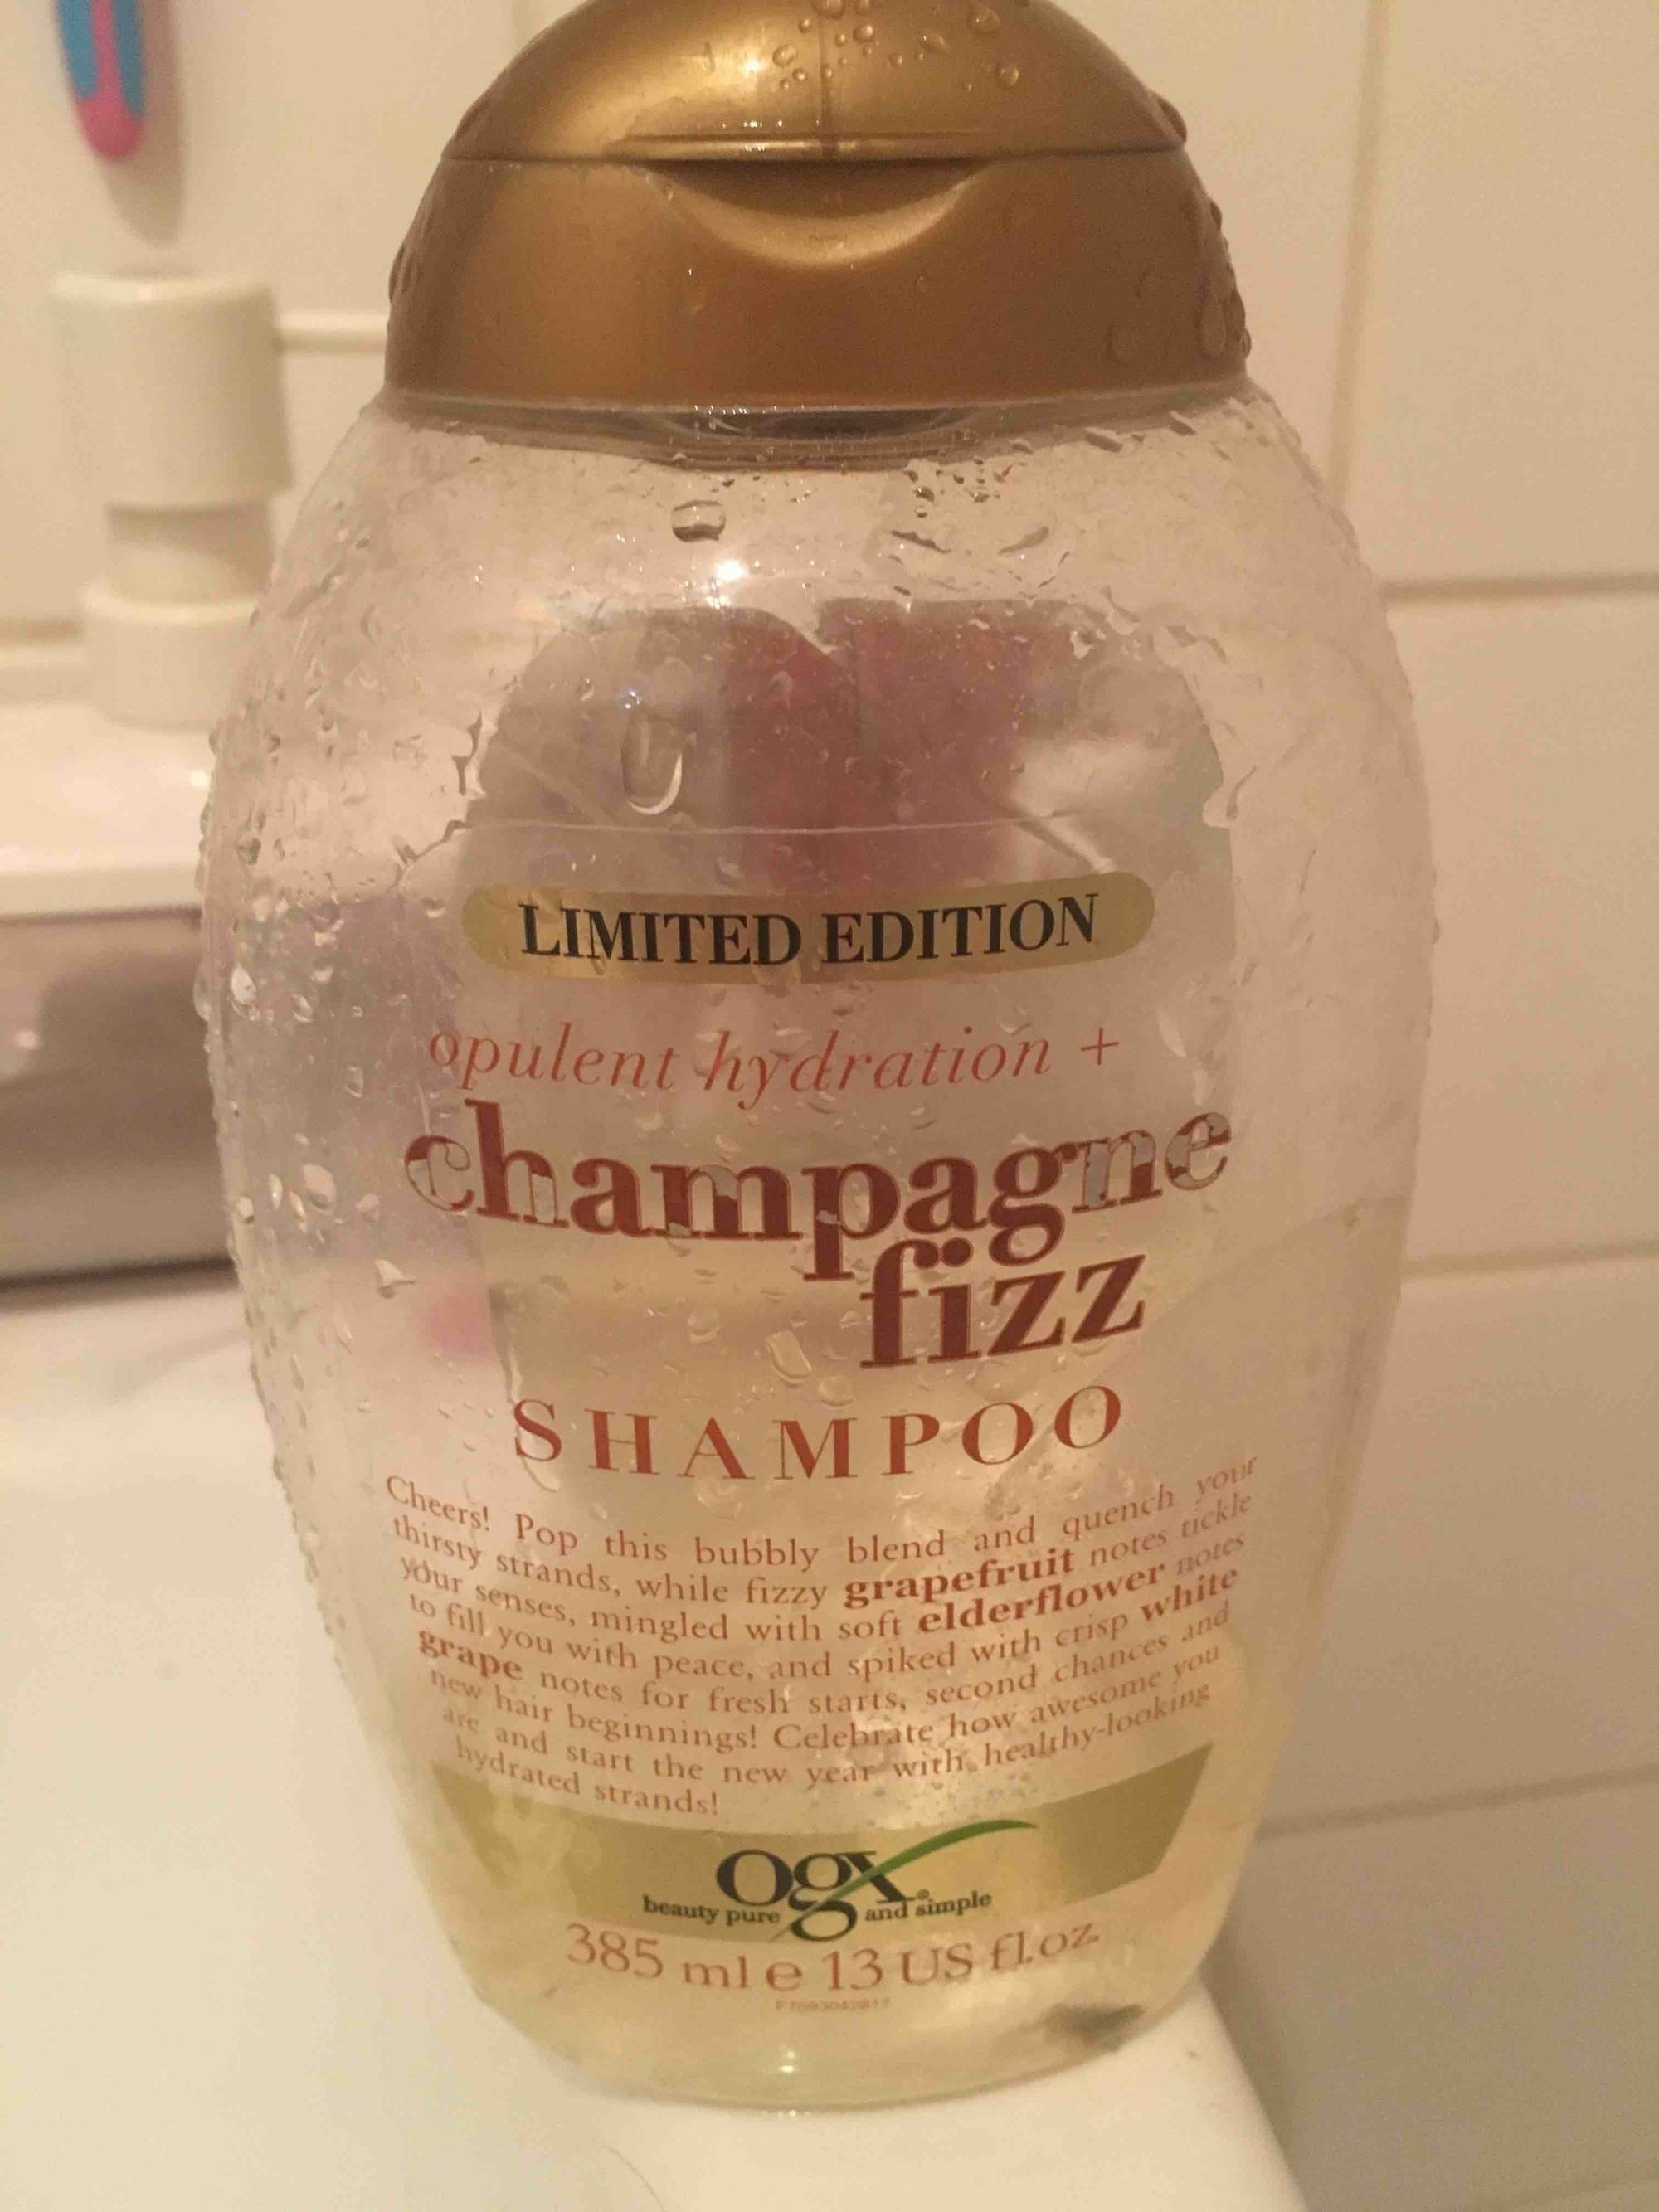 OGX - Champagne fizz - Shampoo